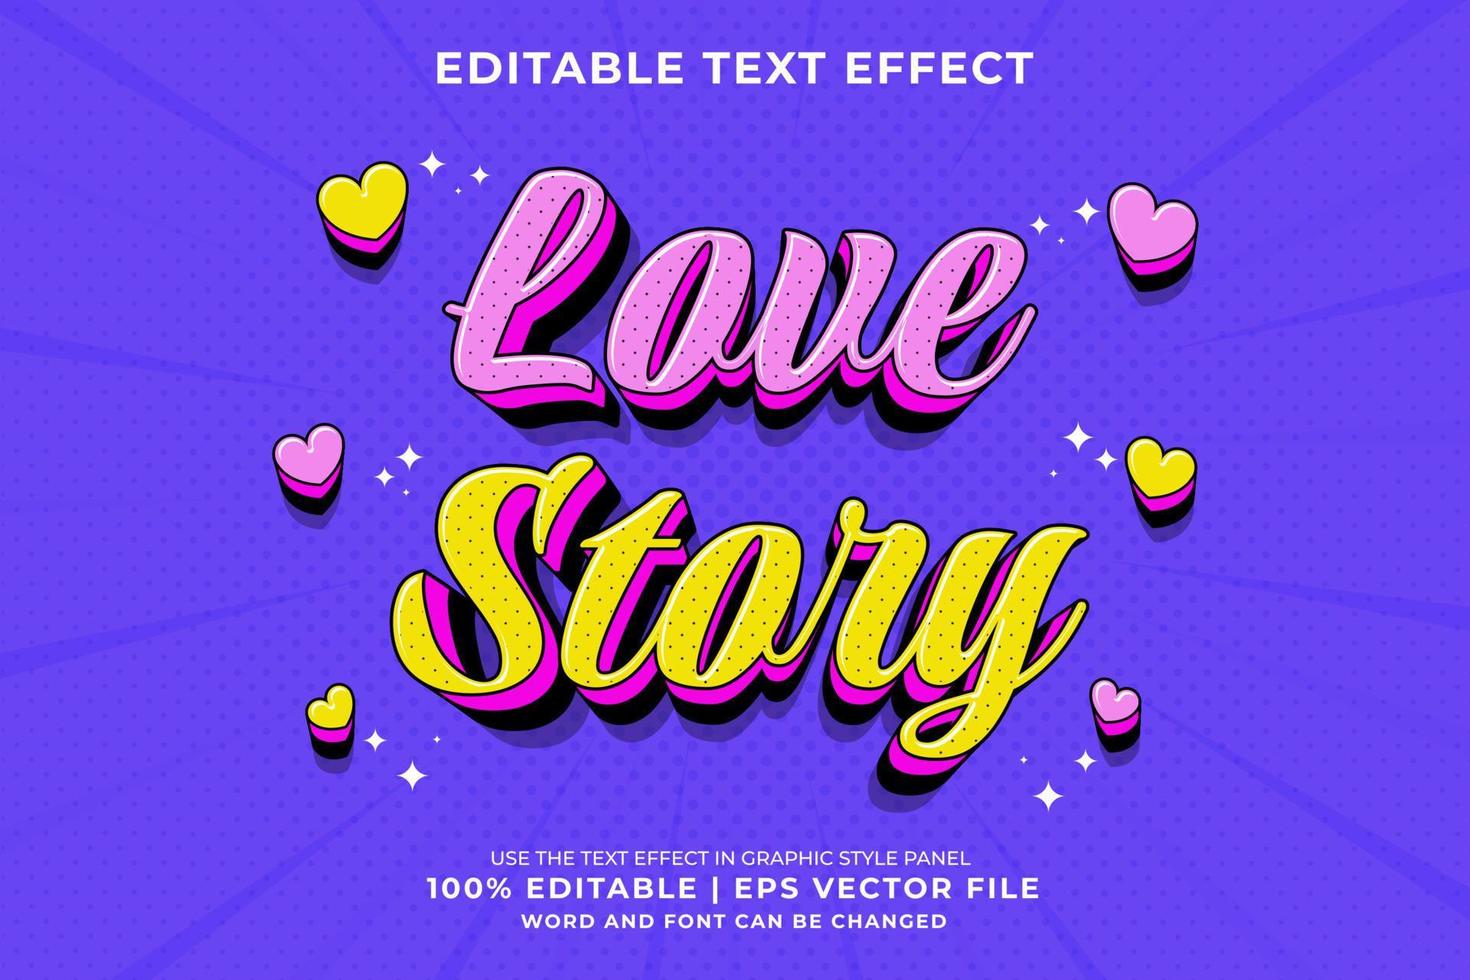 efecto de texto editable - historia de amor estilo de plantilla de dibujos animados tradicional vector premium